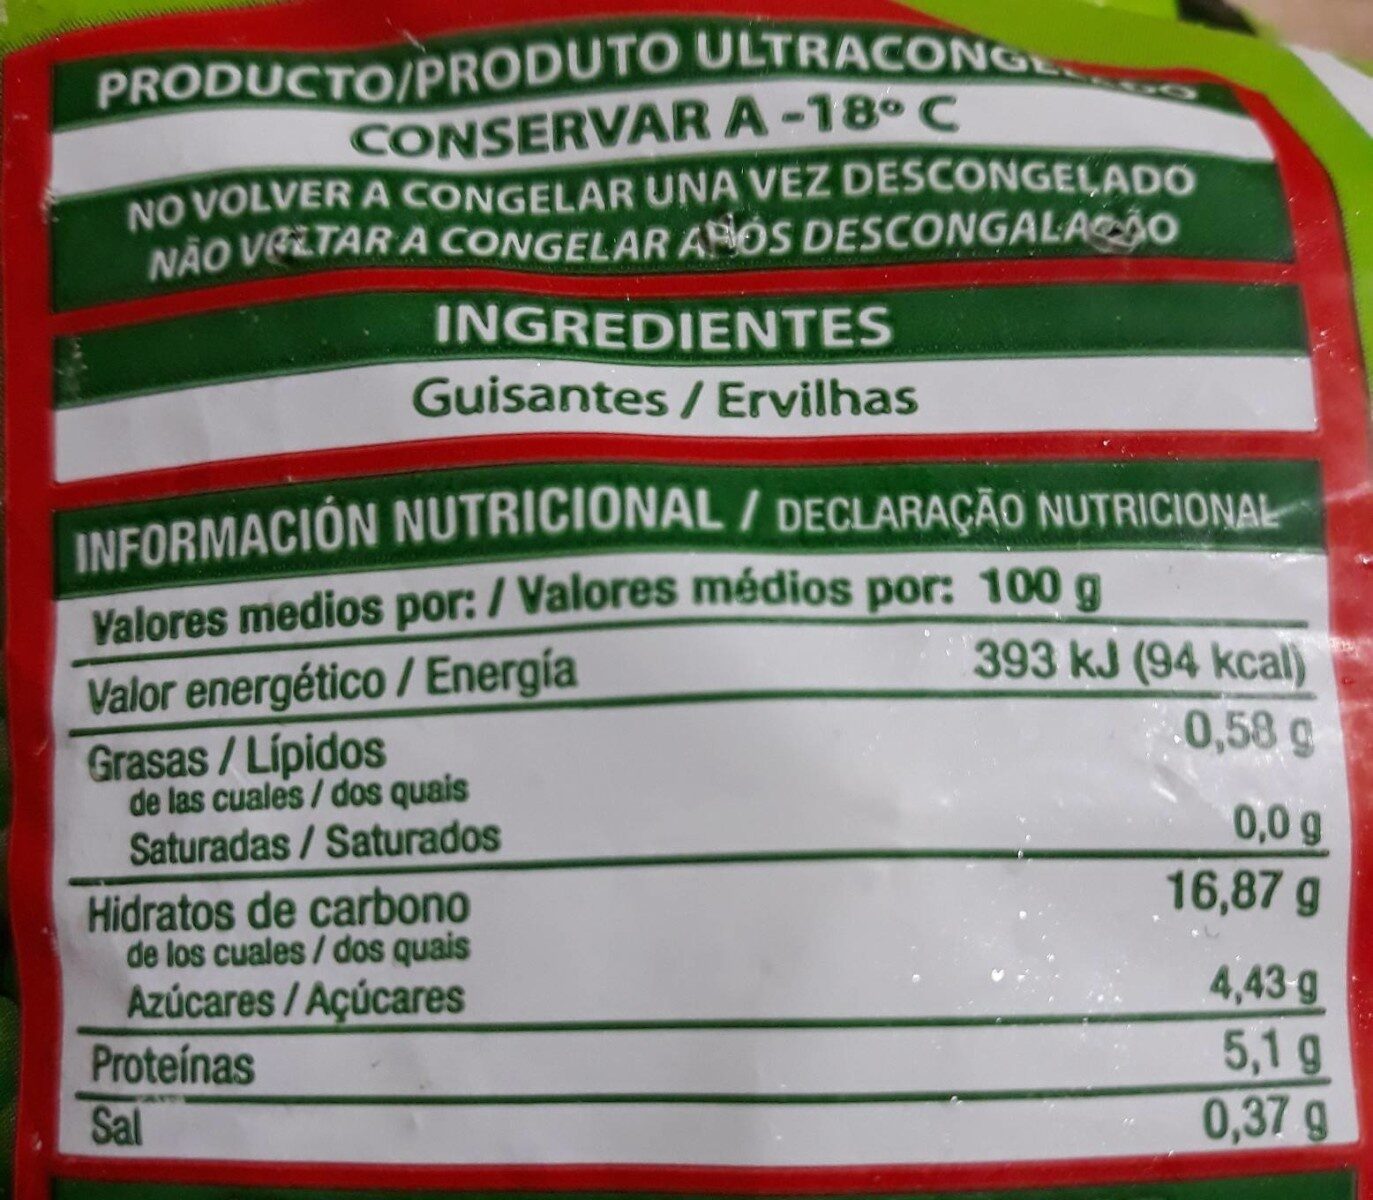 Guisantes ervilhas - Información nutricional